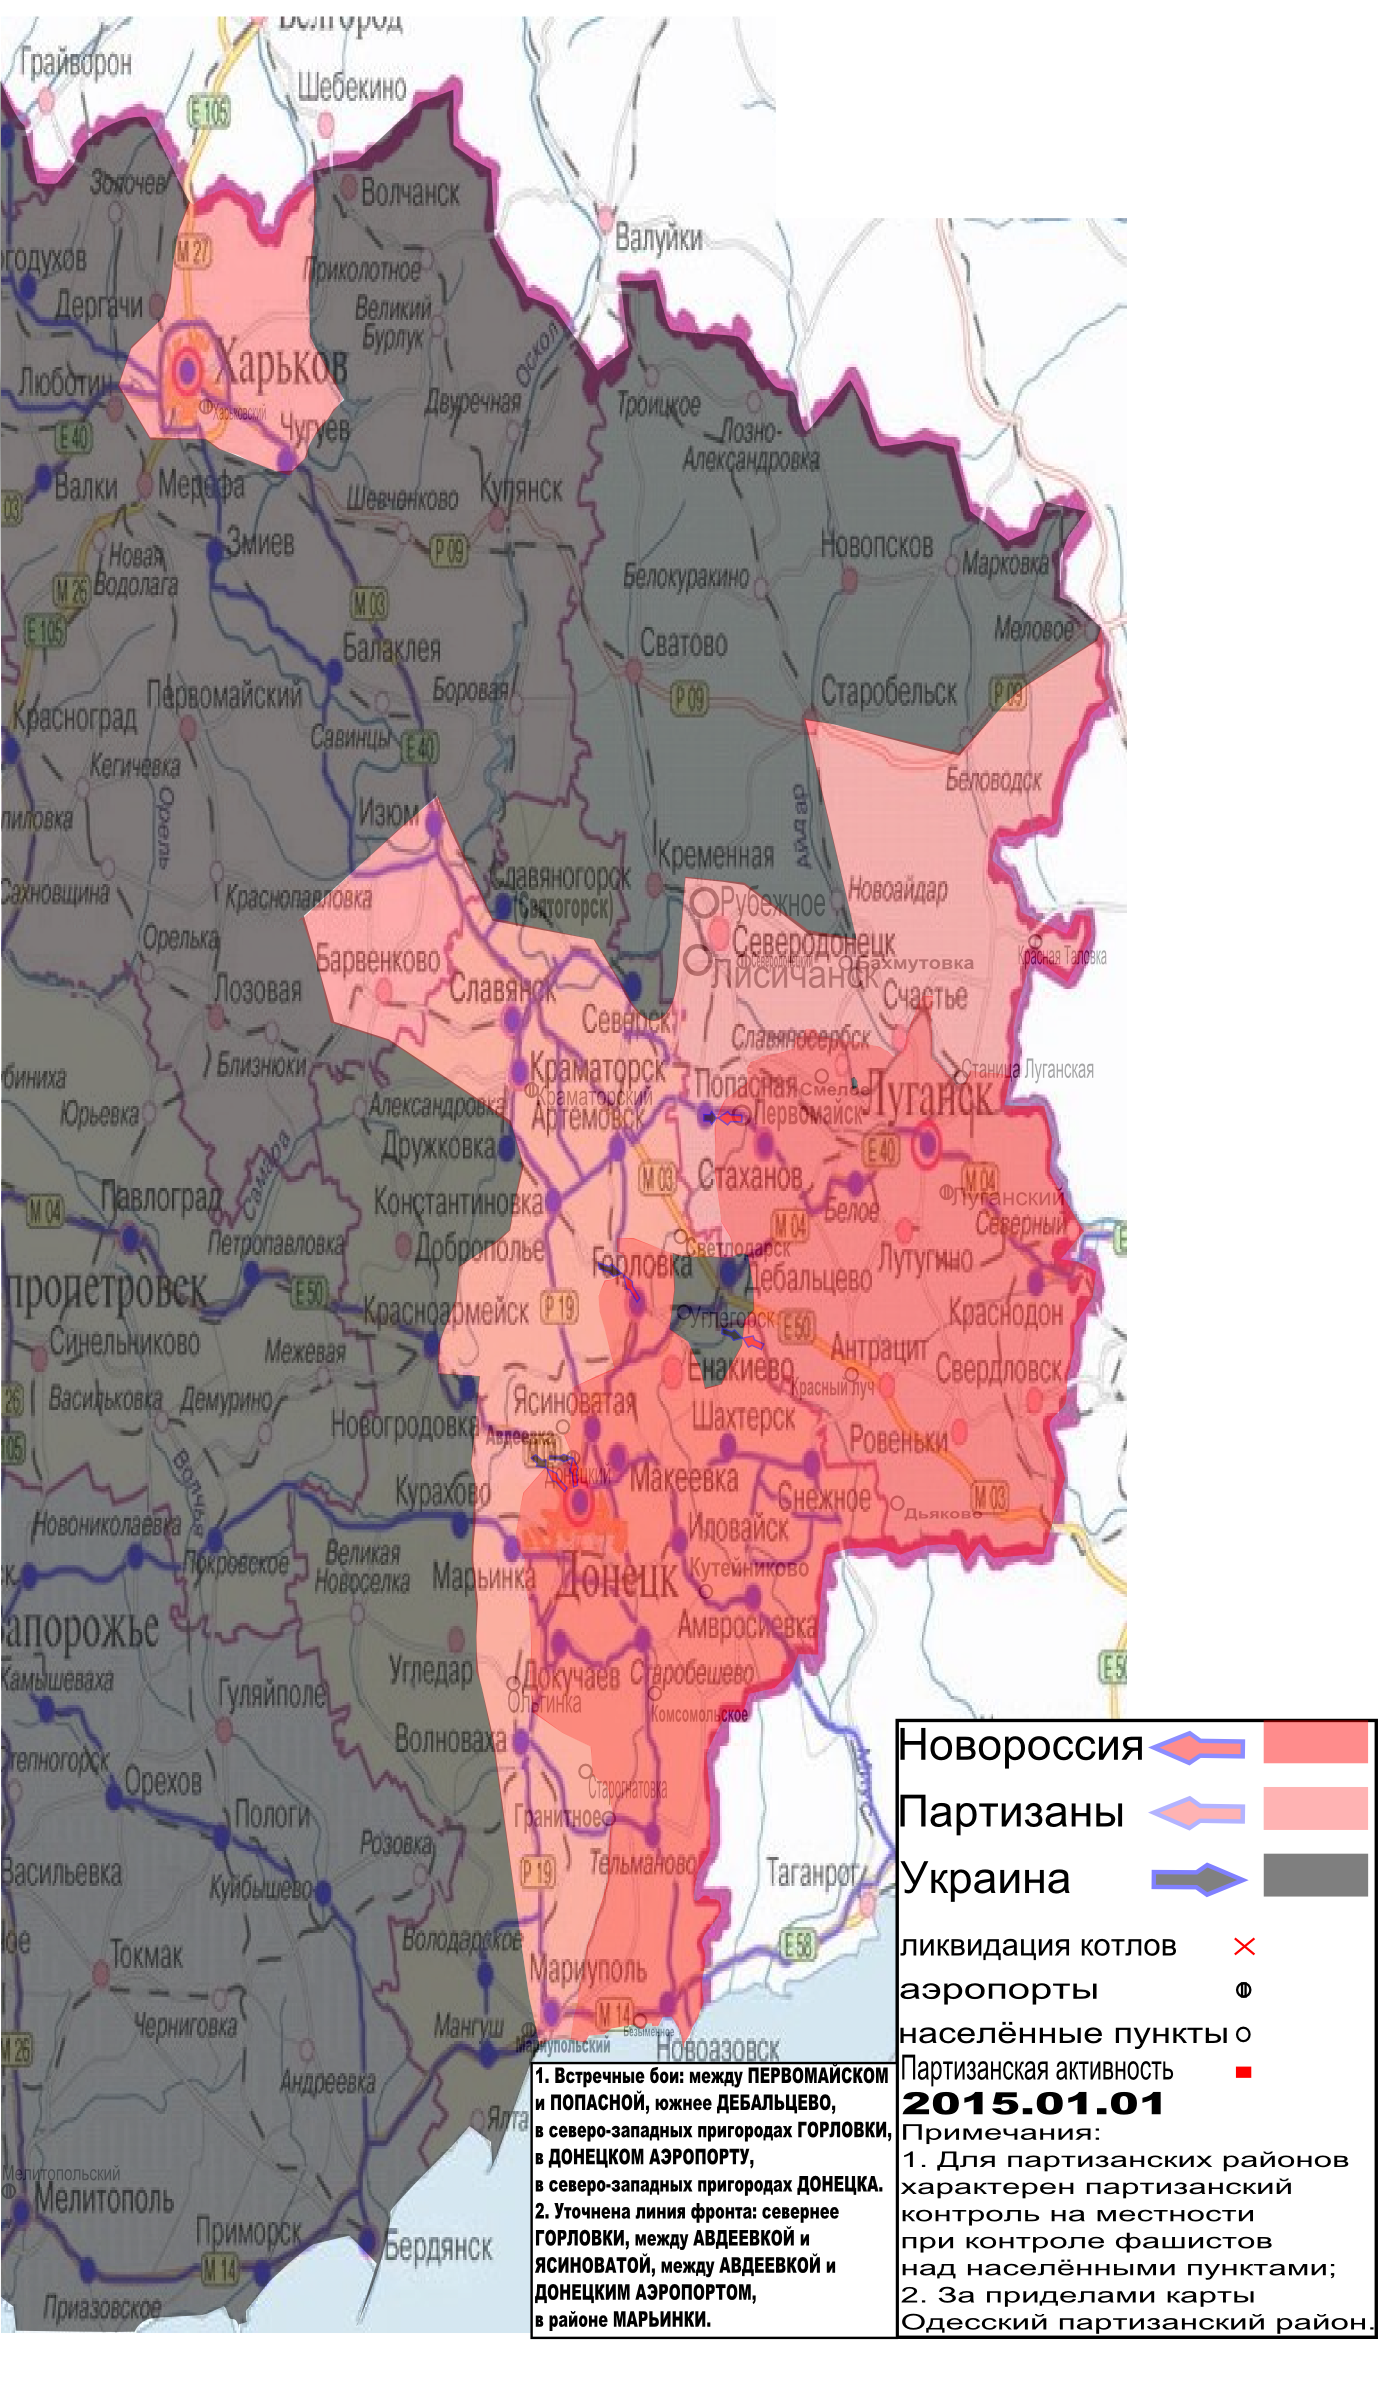 Карта боевых действий и событий в Новороссии с обозначением зон партизанской активности за 1 января 2015